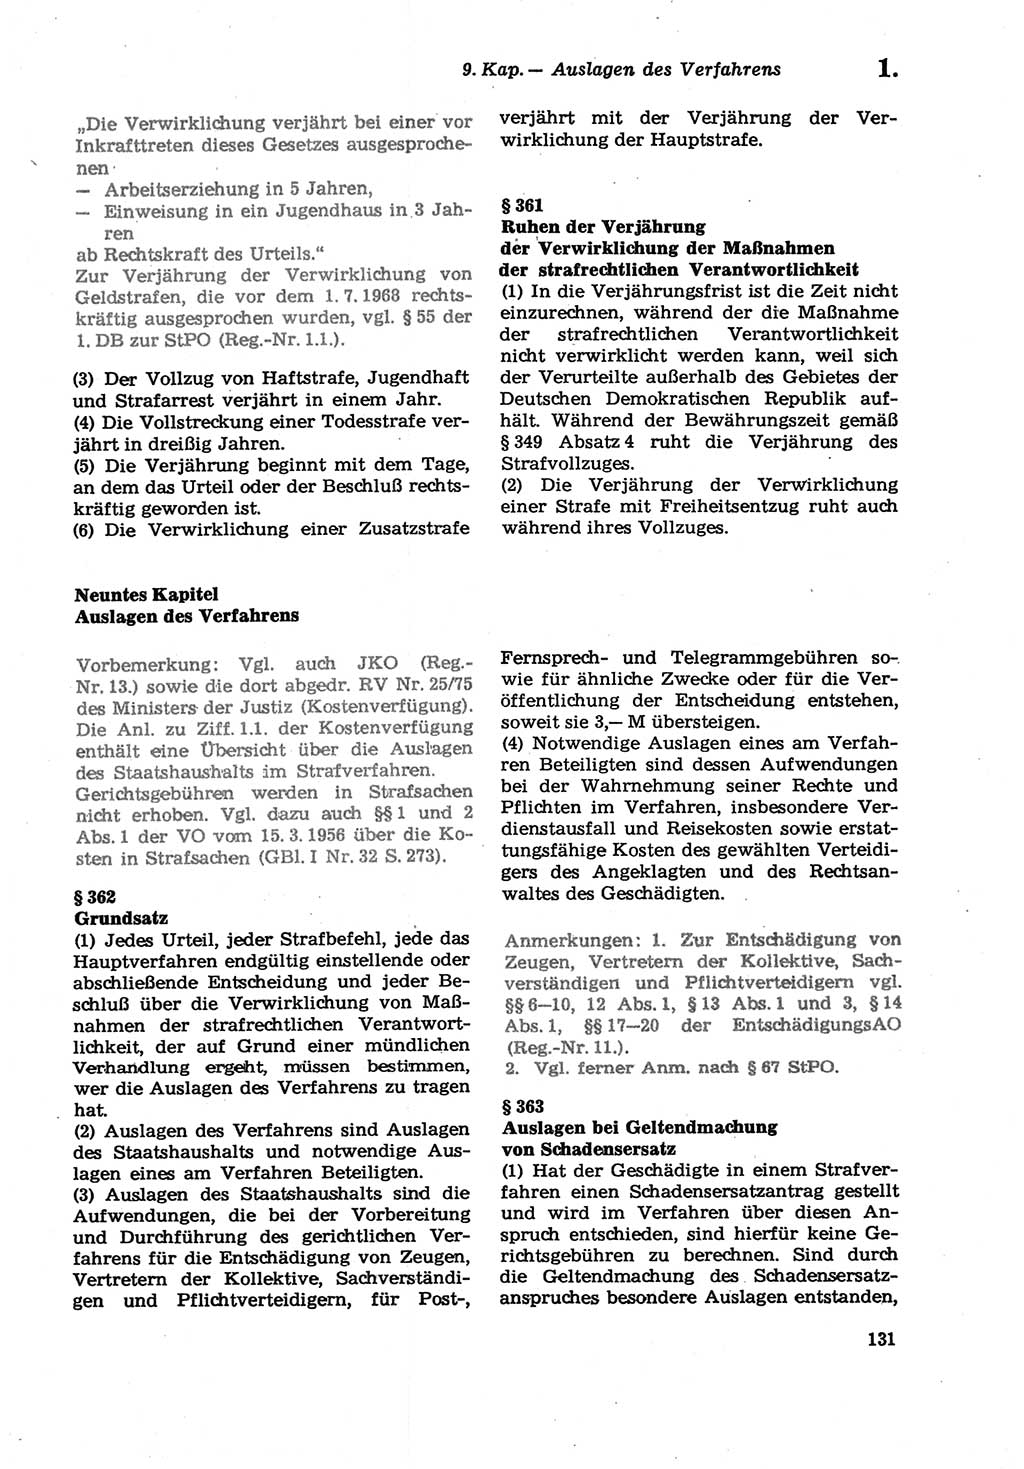 Strafprozeßordnung (StPO) der Deutschen Demokratischen Republik (DDR) sowie angrenzende Gesetze und Bestimmungen 1979, Seite 131 (StPO DDR Ges. Best. 1979, S. 131)